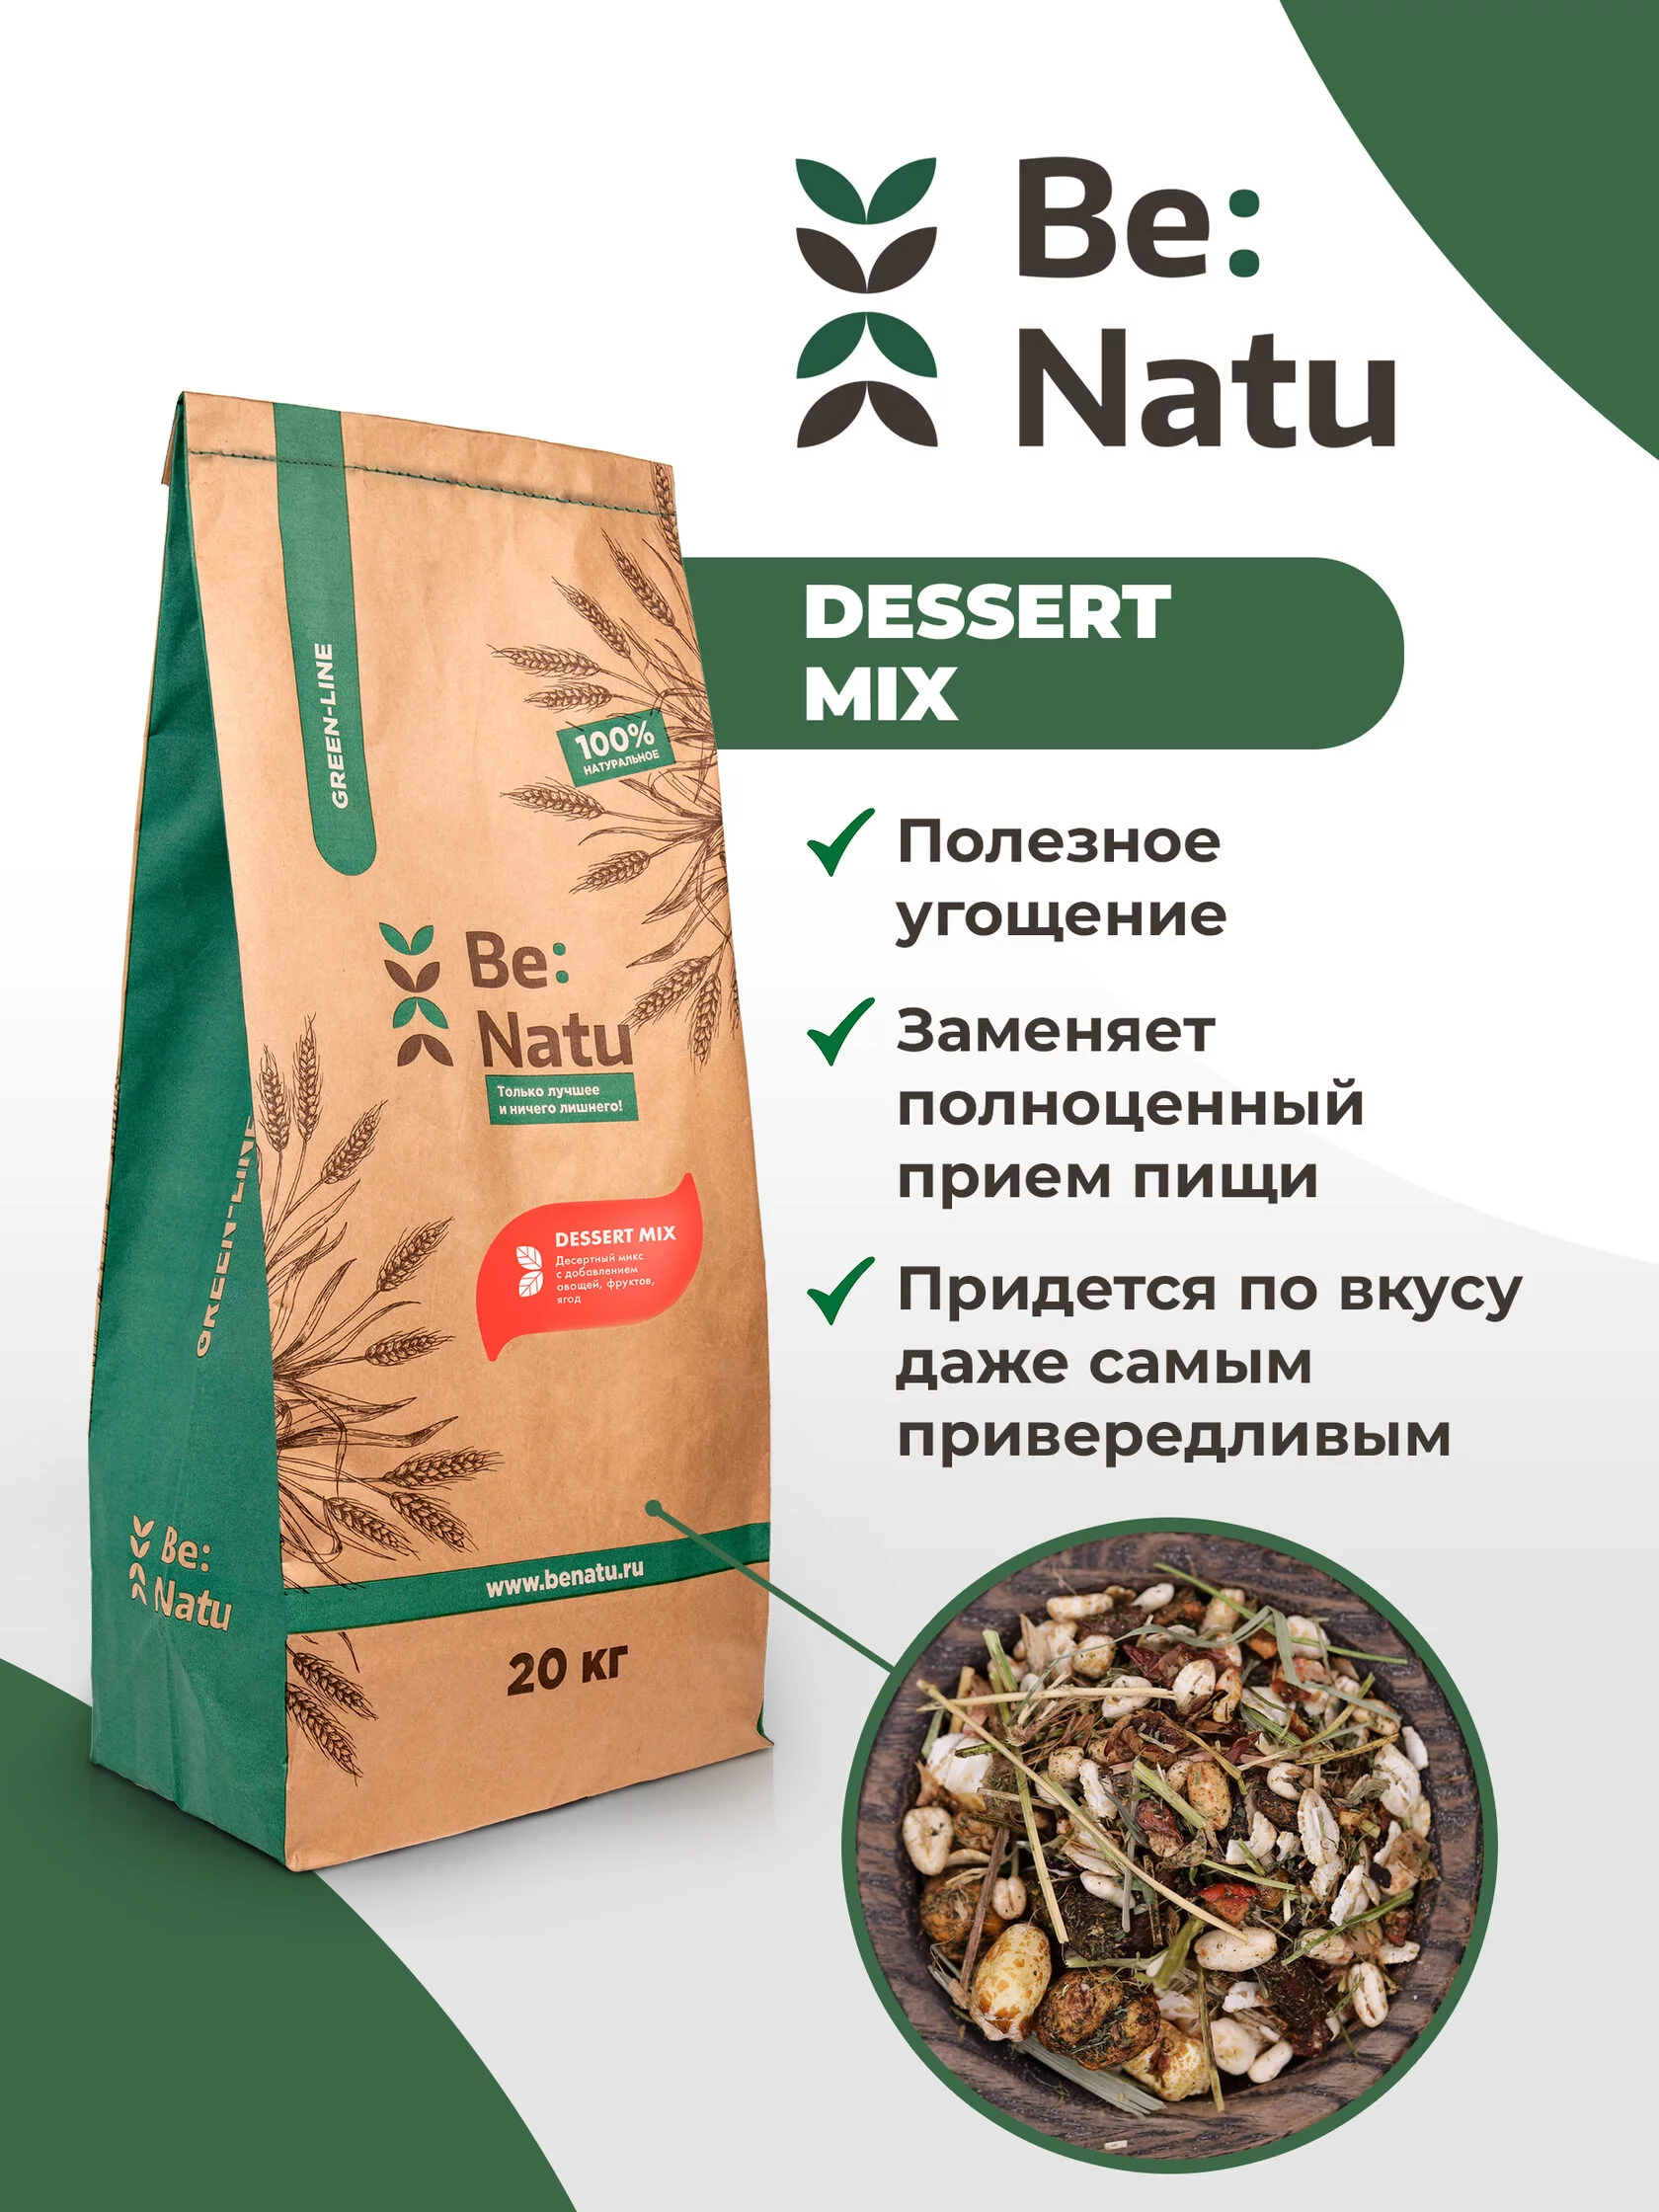  Be:Natu Dessert mix 20 